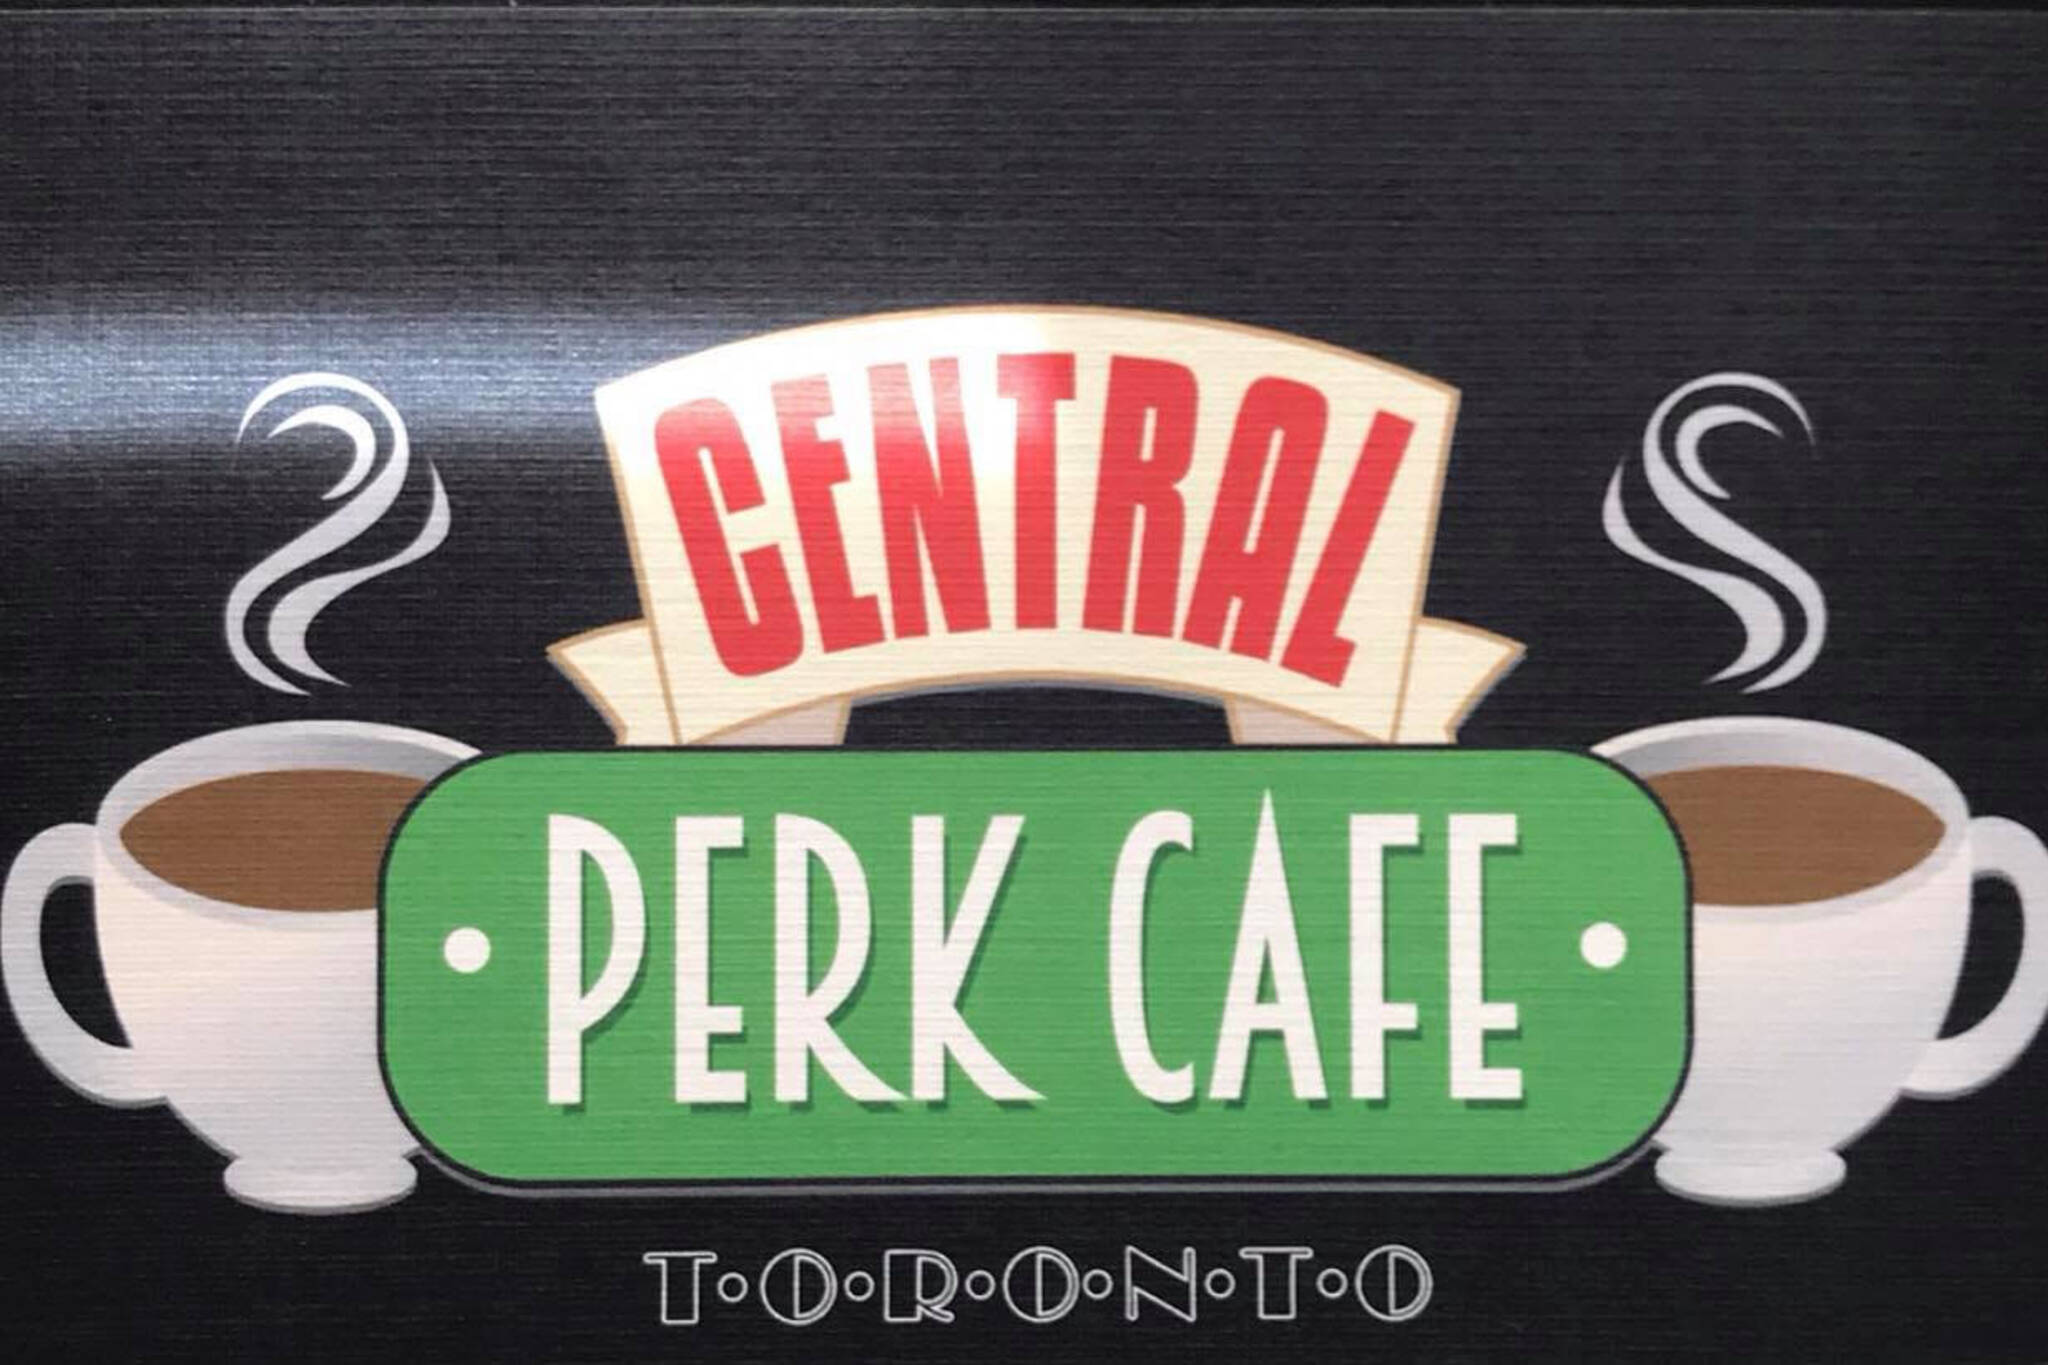 Central Perk Toronto